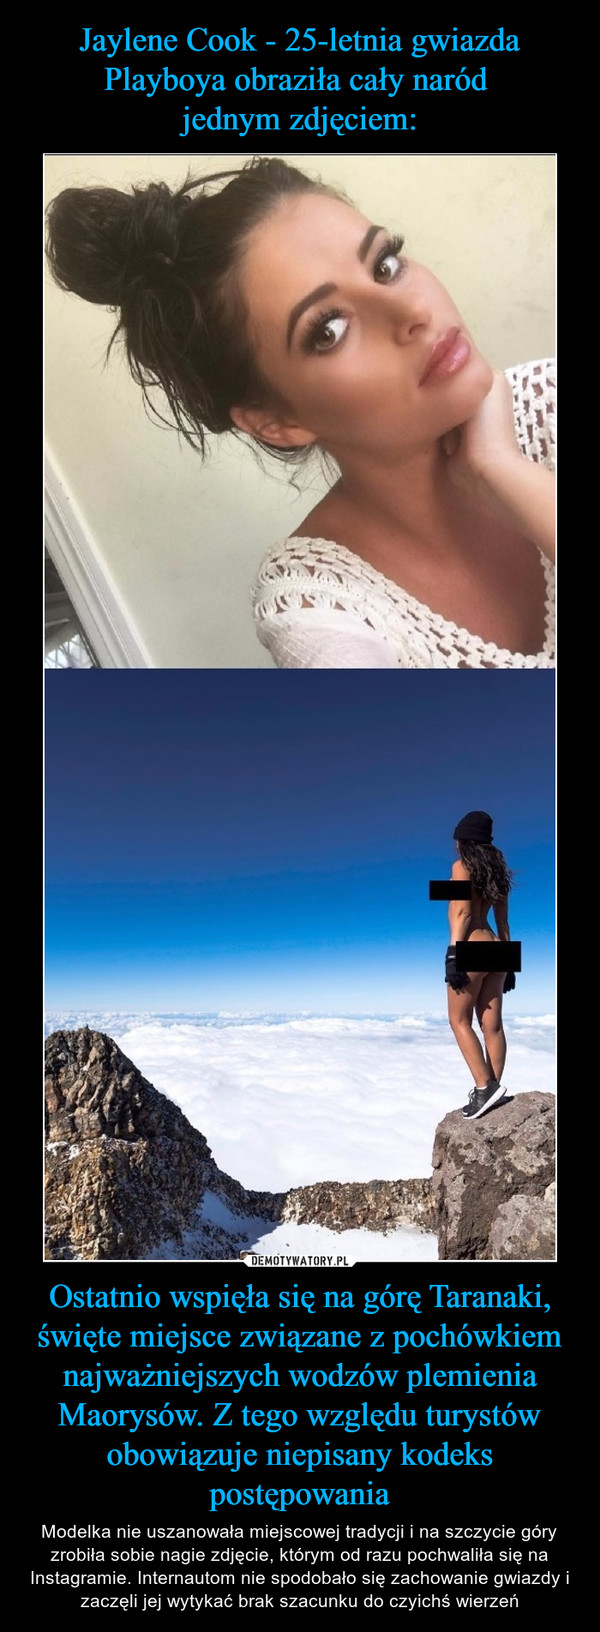 Jaylene Cook - 25-letnia gwiazda Playboya obraziła cały naród 
jednym zdjęciem: Ostatnio wspięła się na górę Taranaki, święte miejsce związane z pochówkiem najważniejszych wodzów plemienia Maorysów. Z tego względu turystów obowiązuje niepisany kodeks postępowania